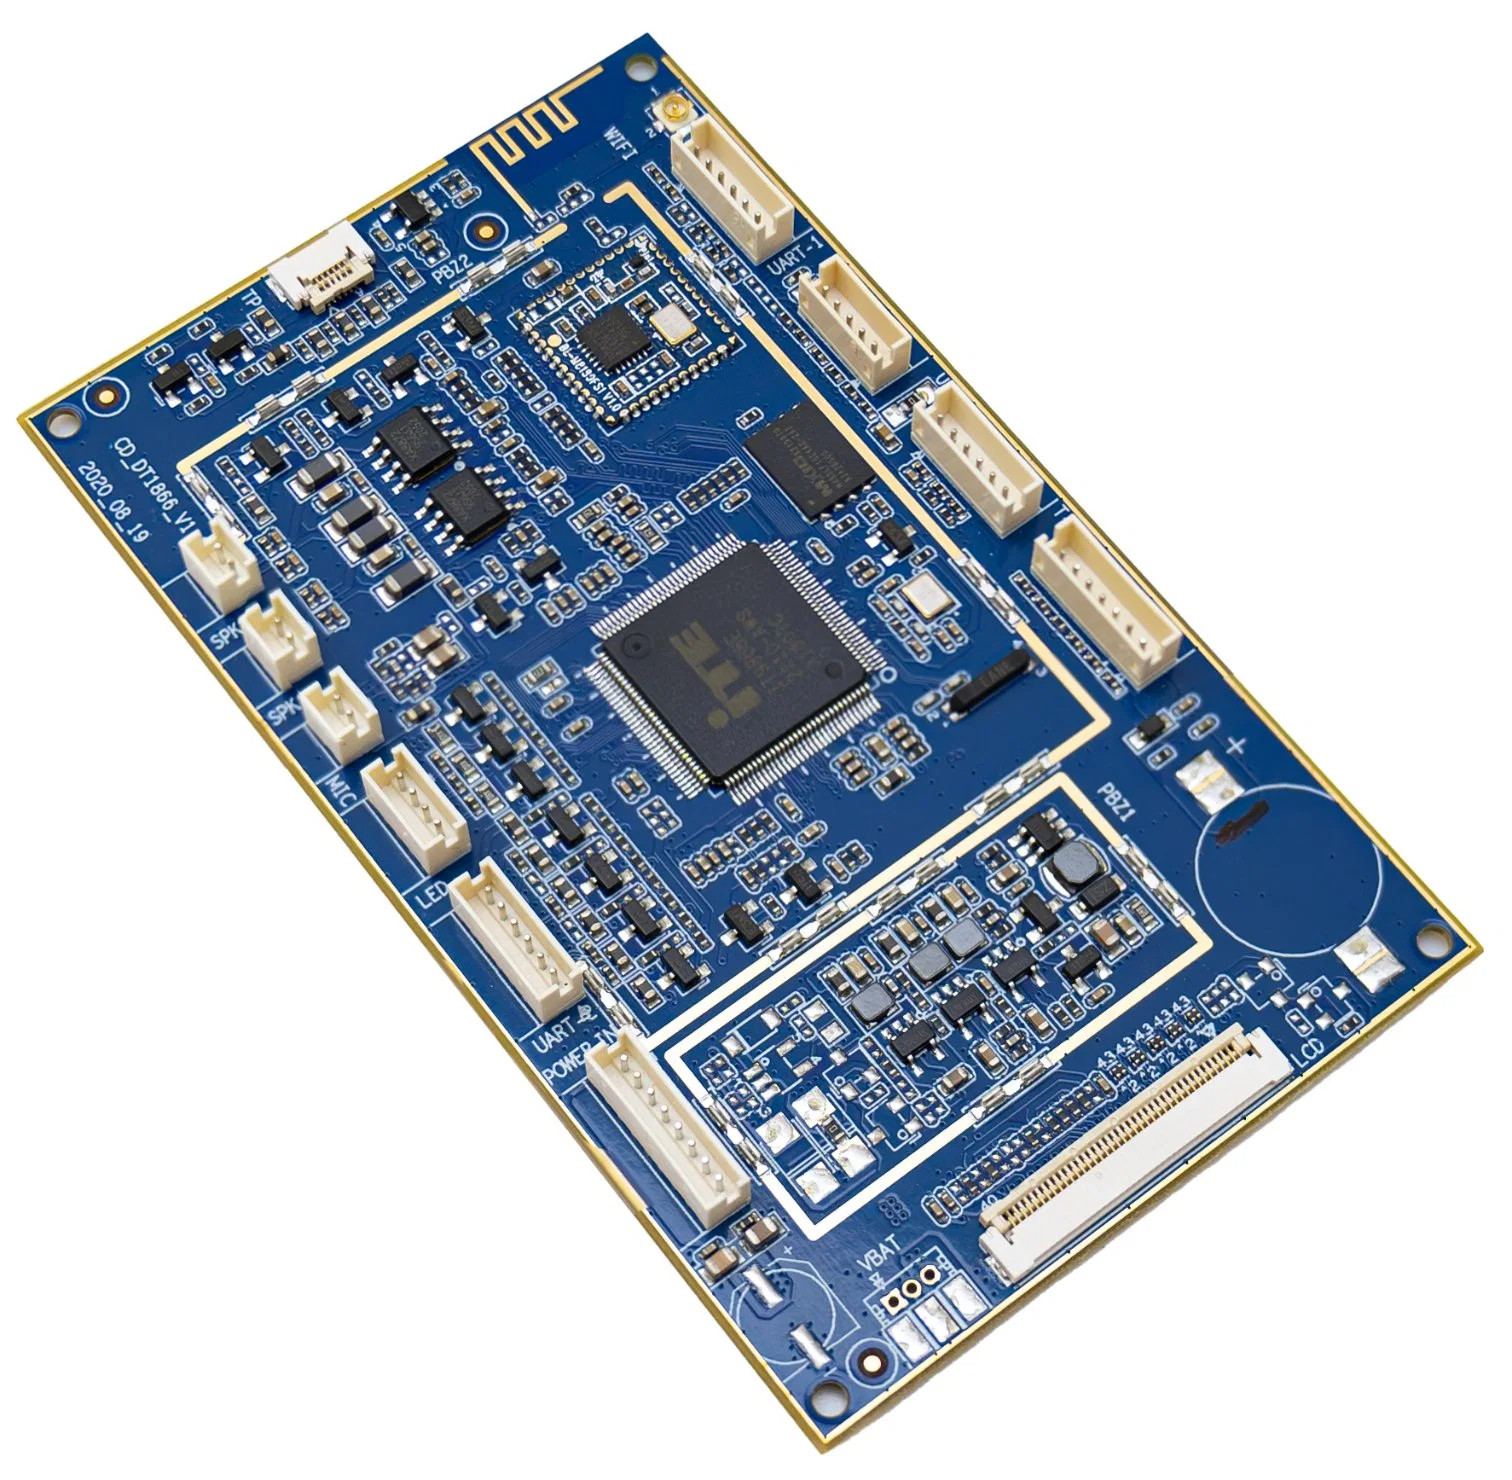 PCBA Circuit Motherboard eingebettet mit dem Mtk8167A Chipsatz von Mediatek Inc, der Android 11 und WiFi und Bluetooth-Konnektivität unterstützt.